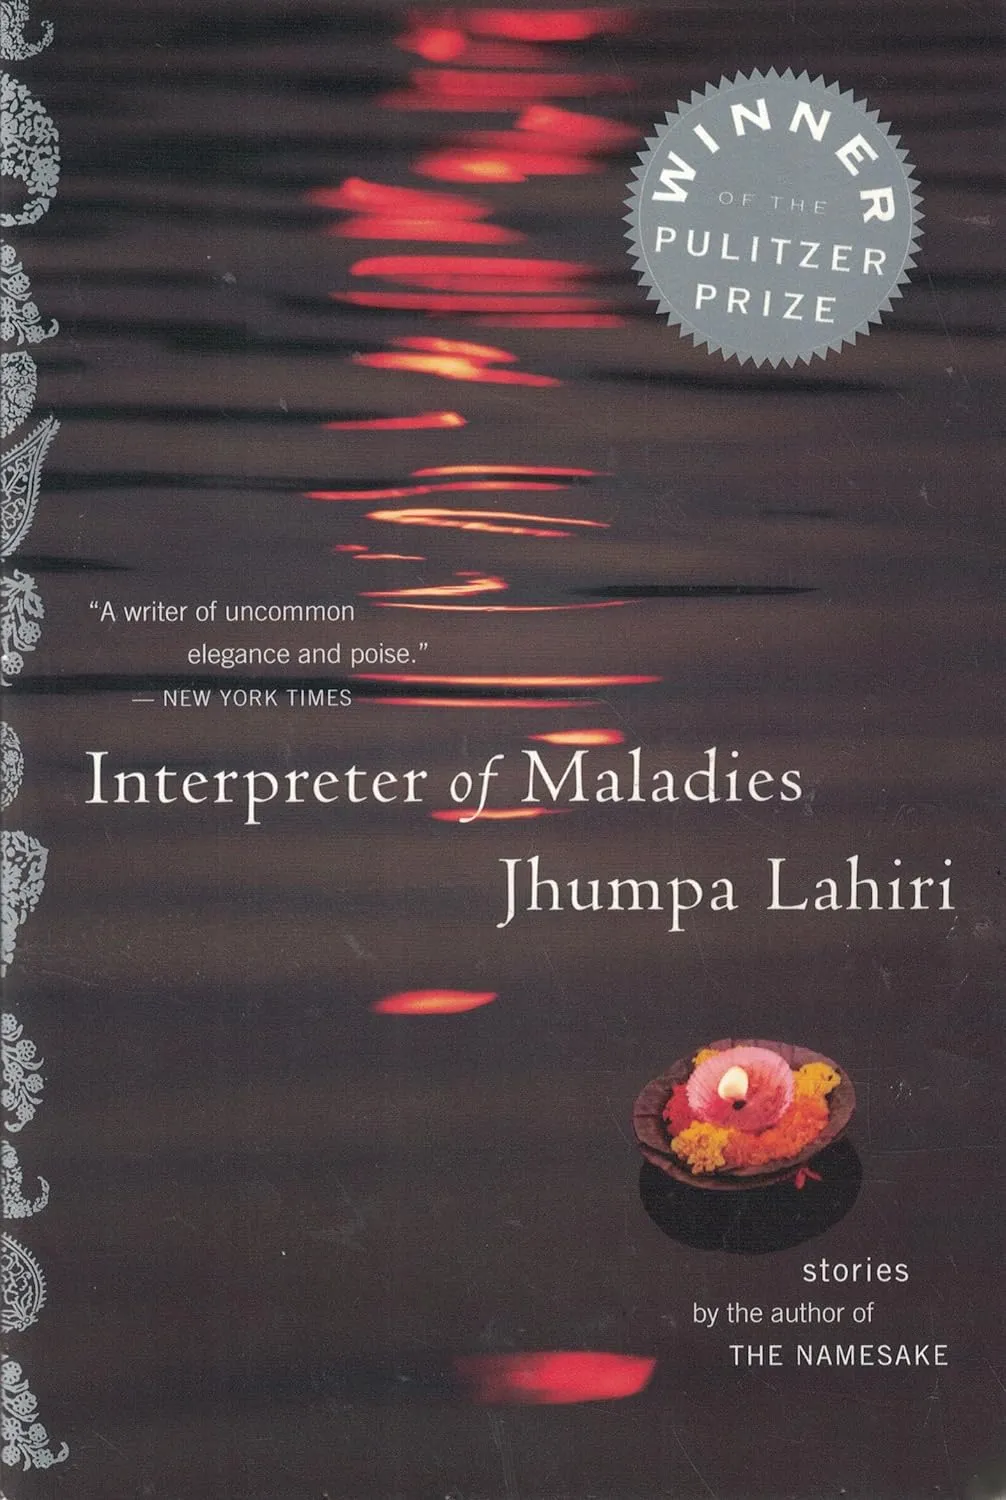 The Interpreter of Maladies by Jhumpa Lahiri